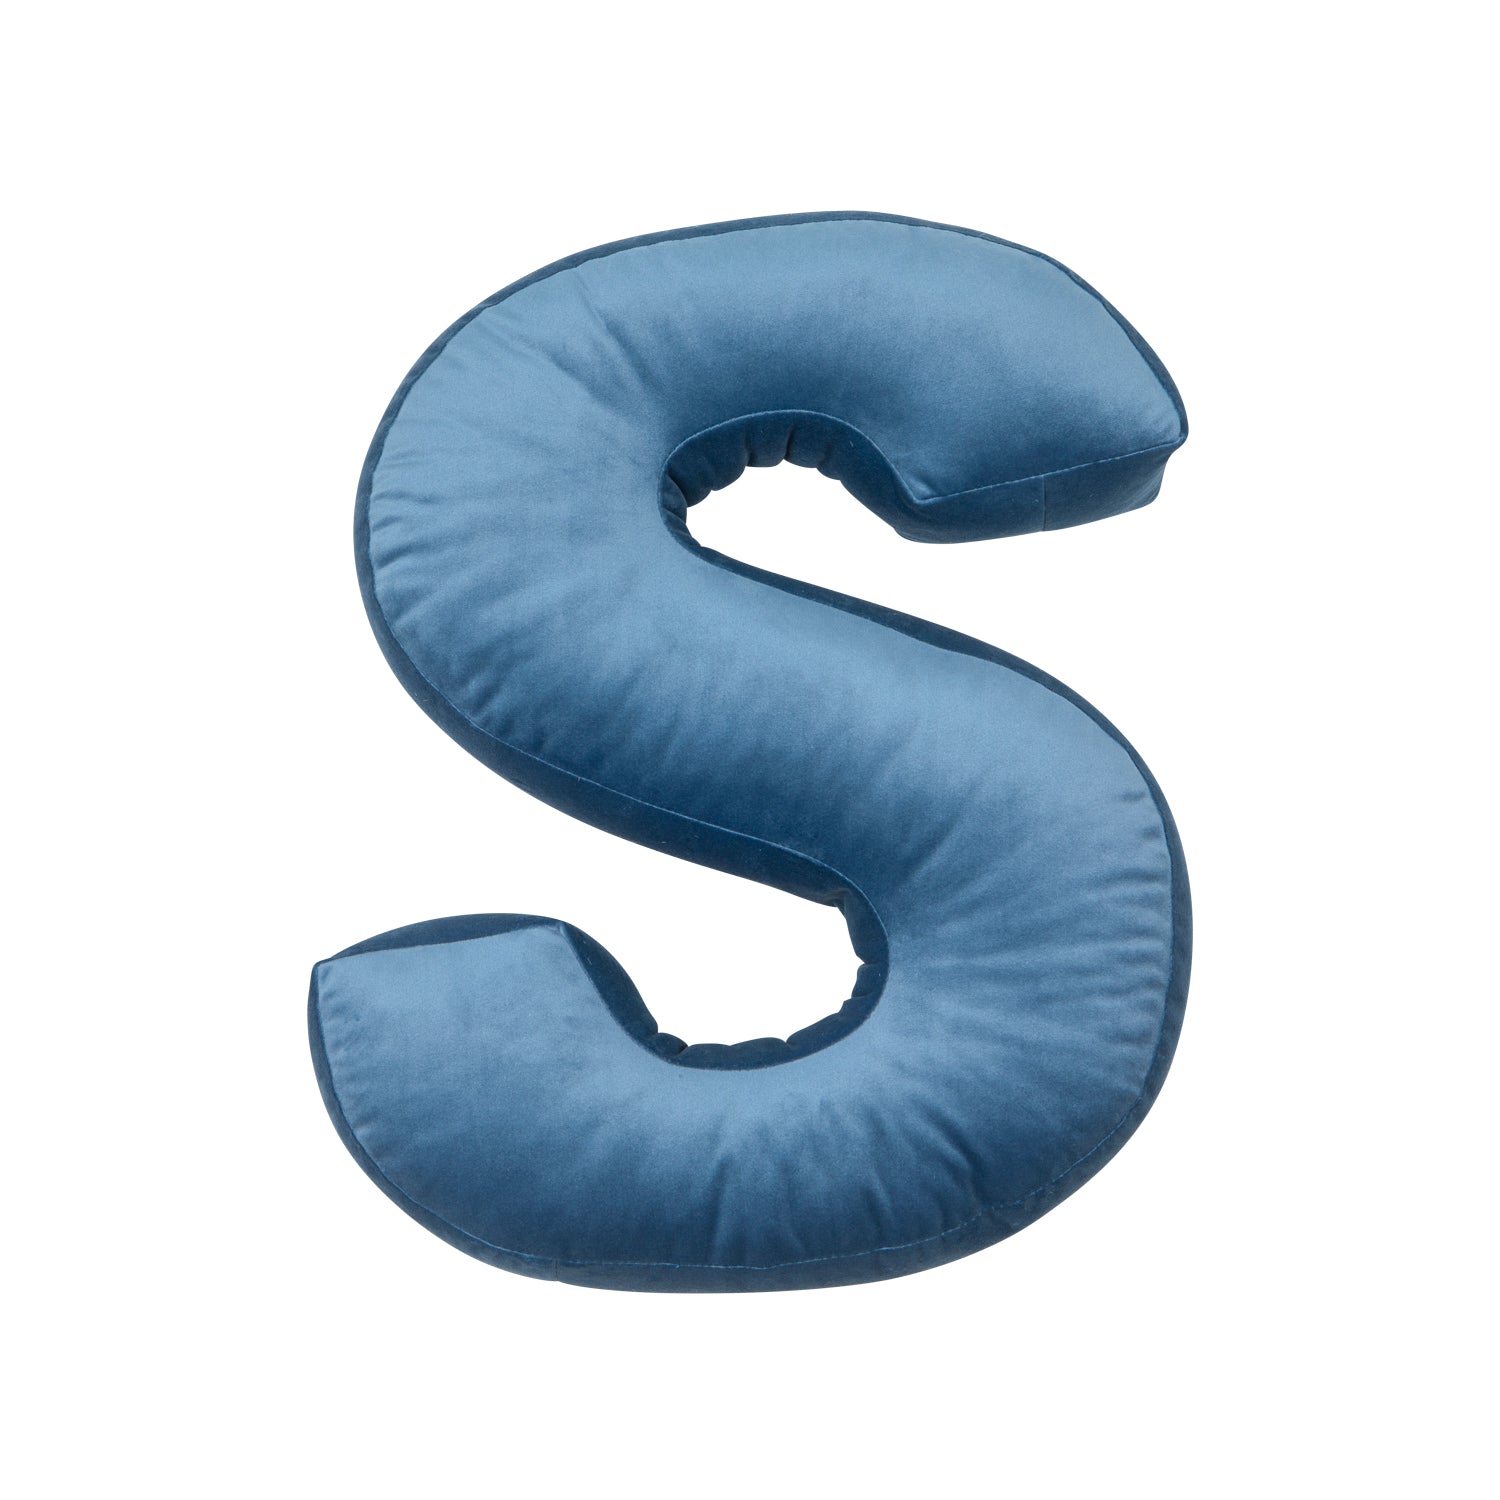 velvet letter cushion s blue by bettys home